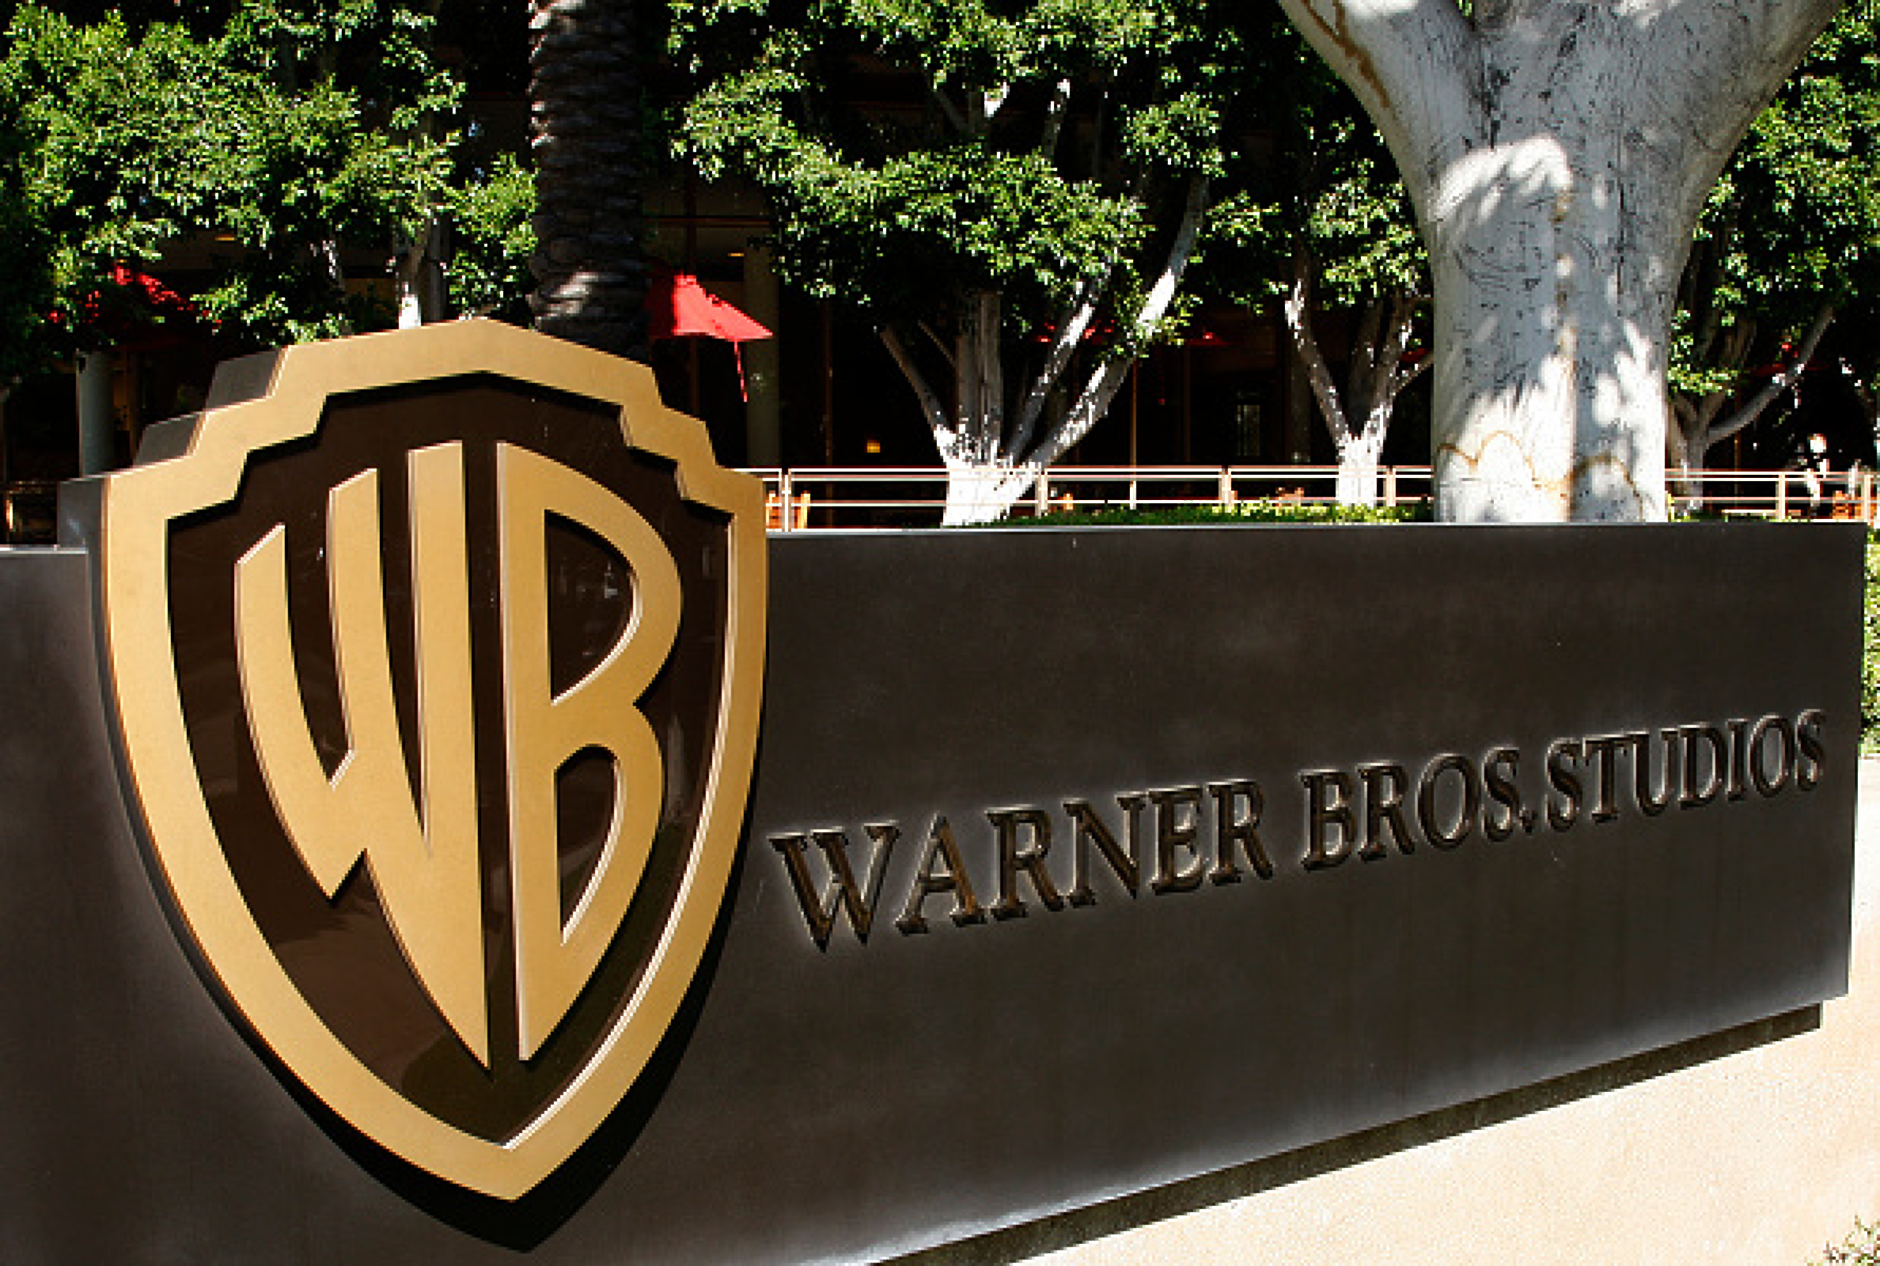 Warner Bros. преговаря за правата за излъчване на срещите от NBA